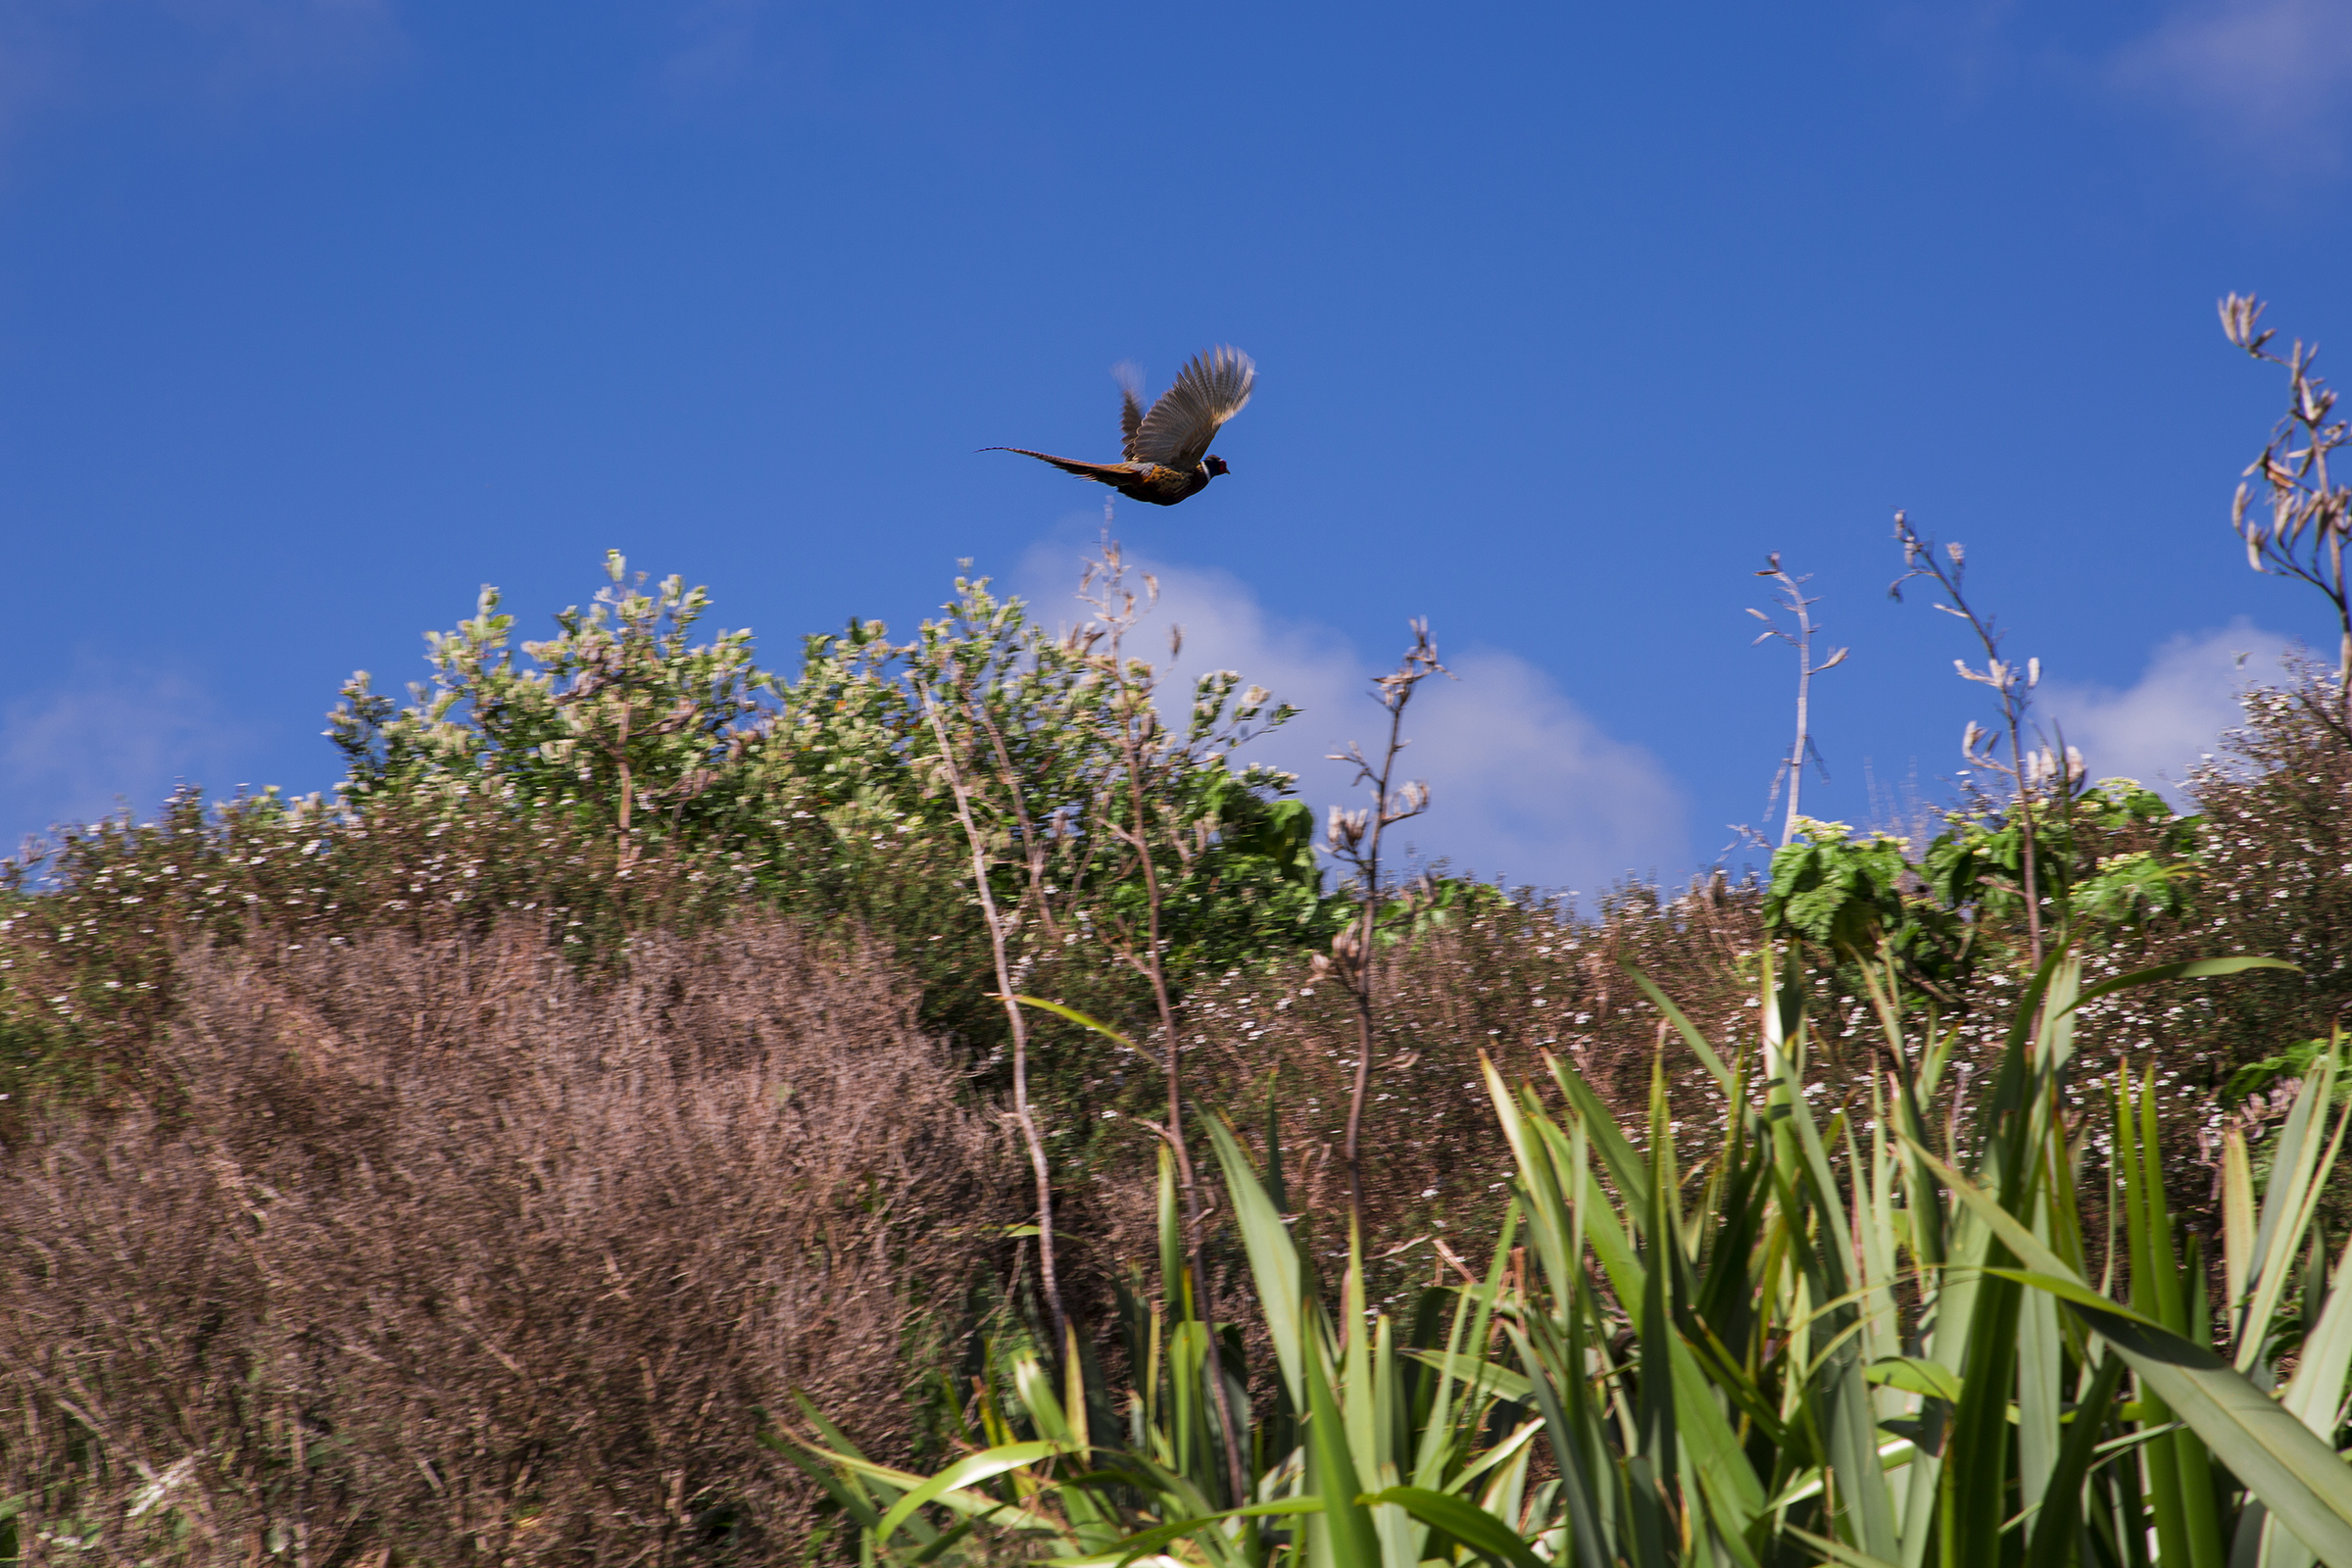 Bird flying above bush